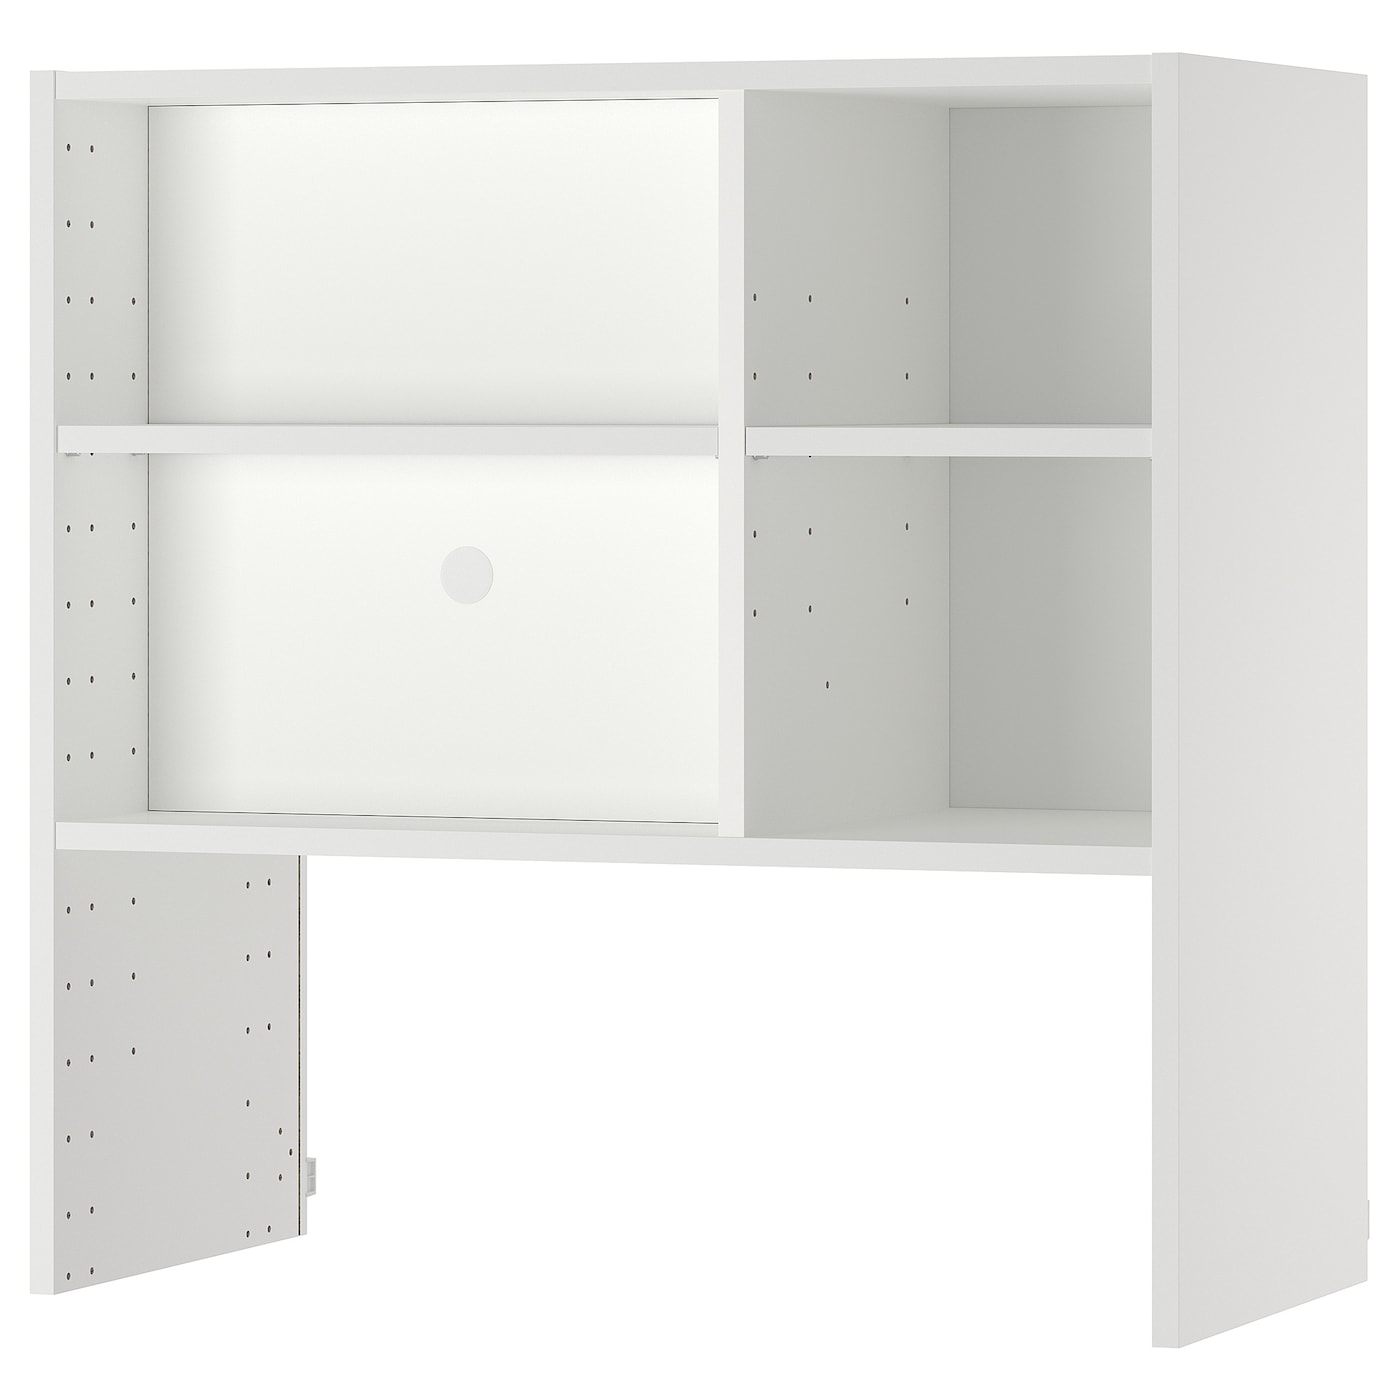 Шкафчик навесной для встроенной вытяжки -  METOD  IKEA/  МЕТОД ИКЕА, 80х80 см, белый